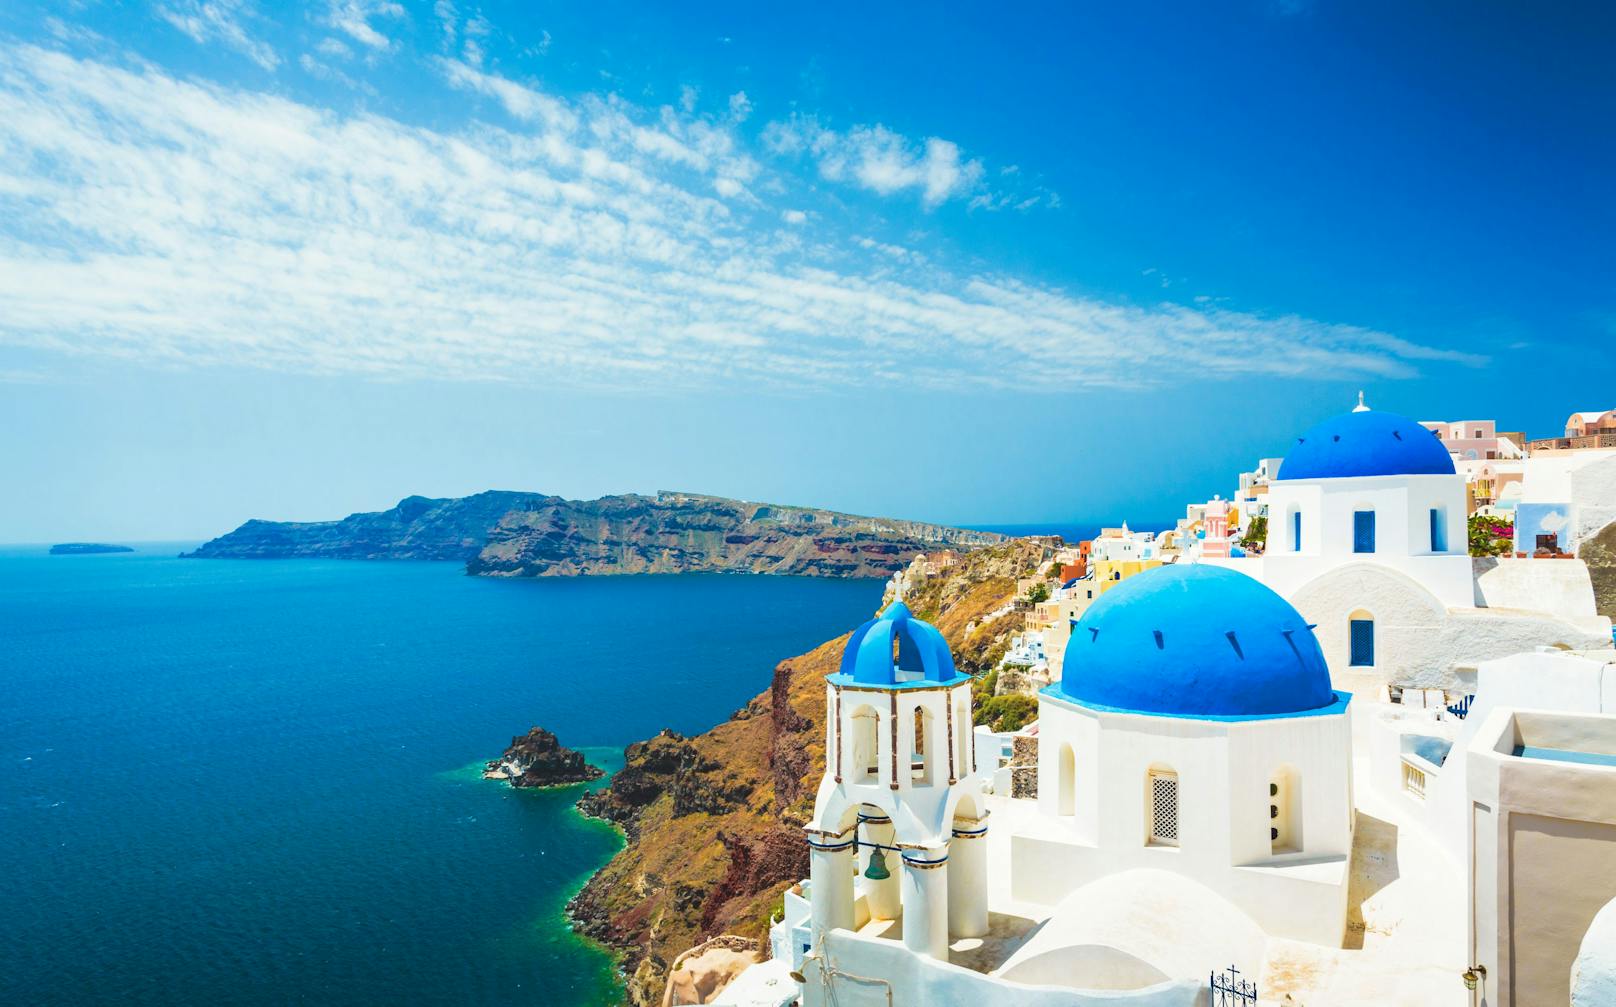 Griechenland will bis Mai die Lockdown-Maßnahmen gelockert haben und den Tourismus wieder hochfahren.